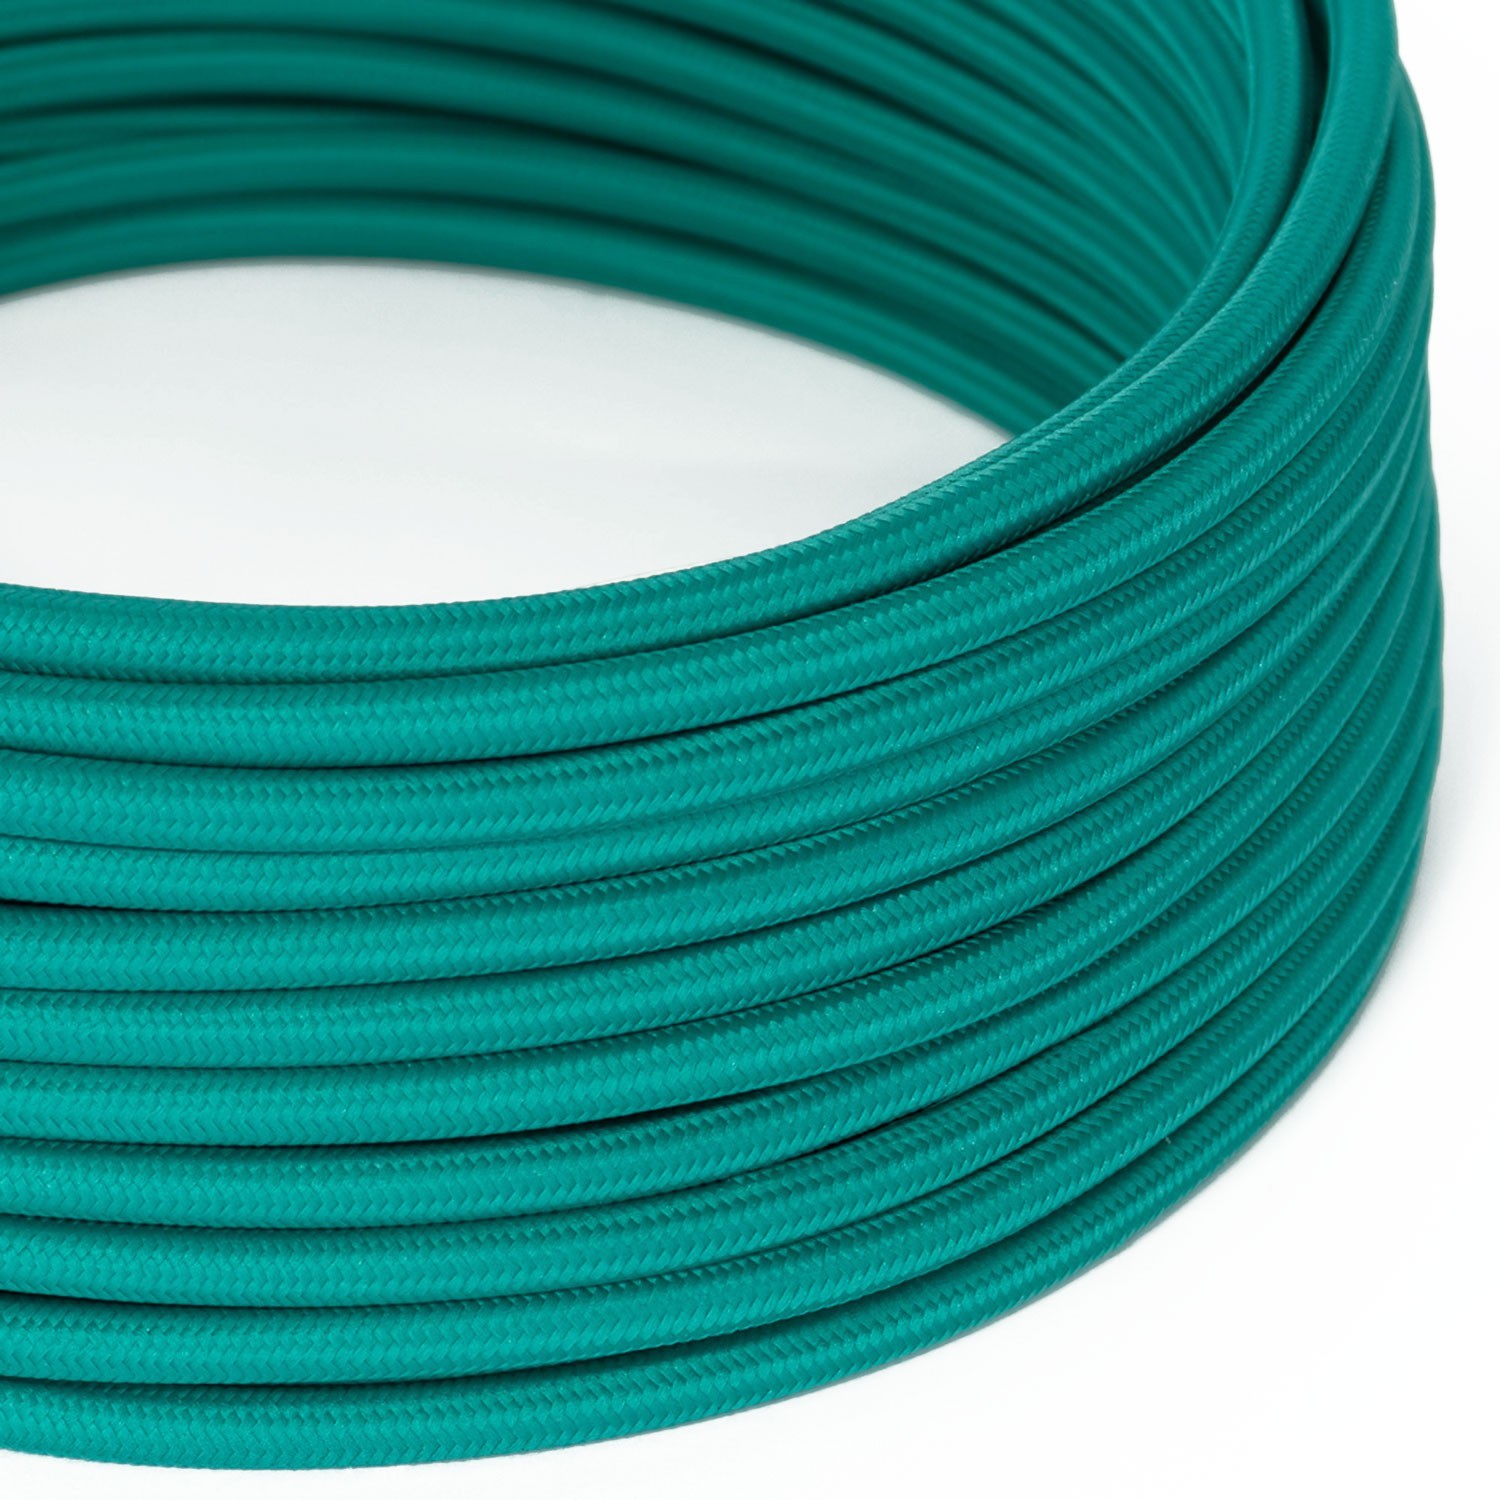 Elektrisches Kabel rund überzogen mit Textil-Seideneffekt Einfarbig Türkis RM71